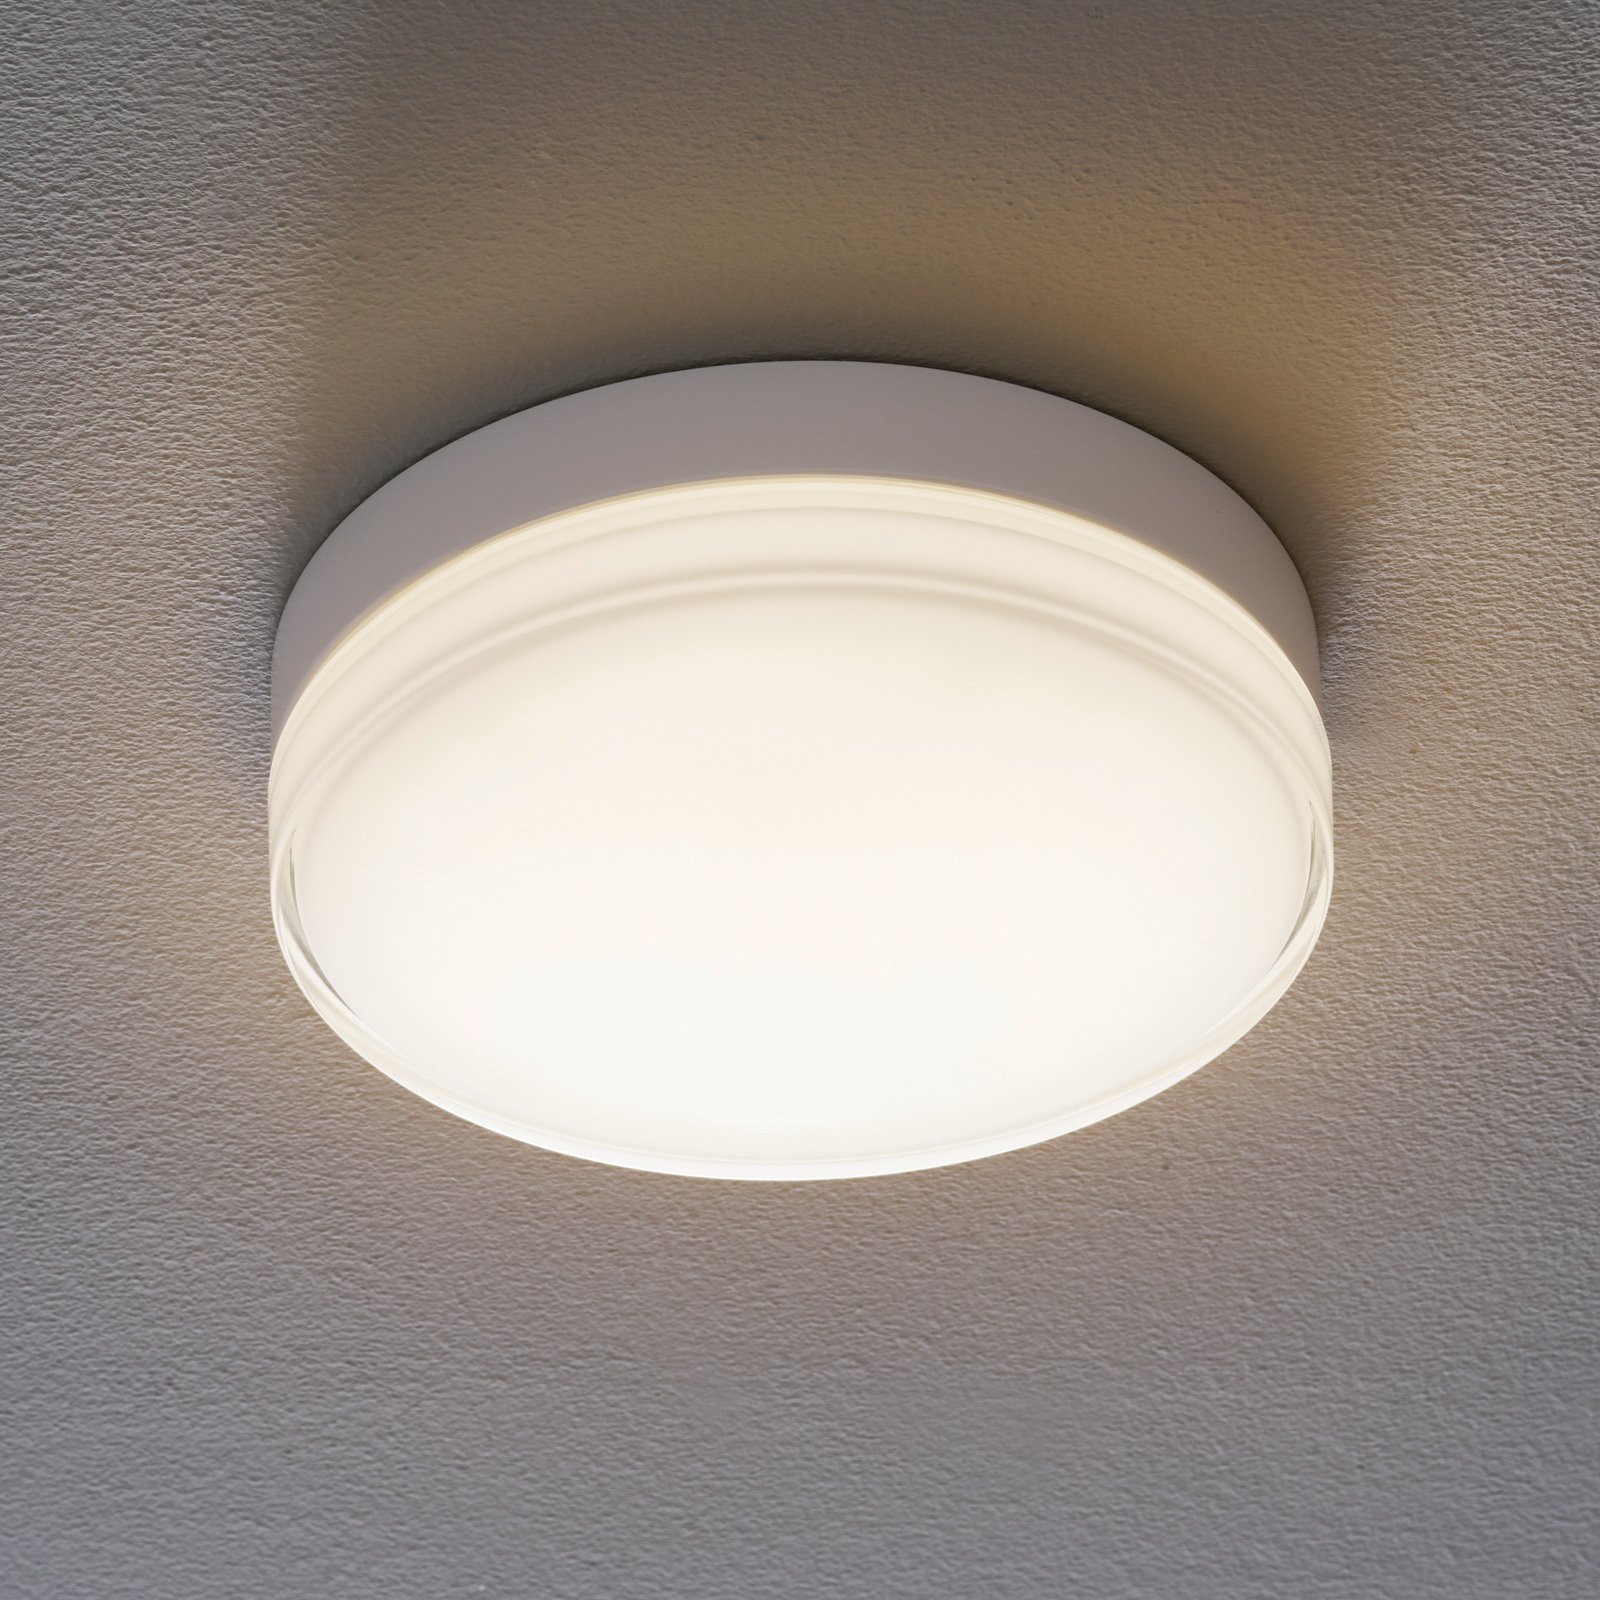 BEGA 12128 LED ceiling light DALI 930 white 26 cm